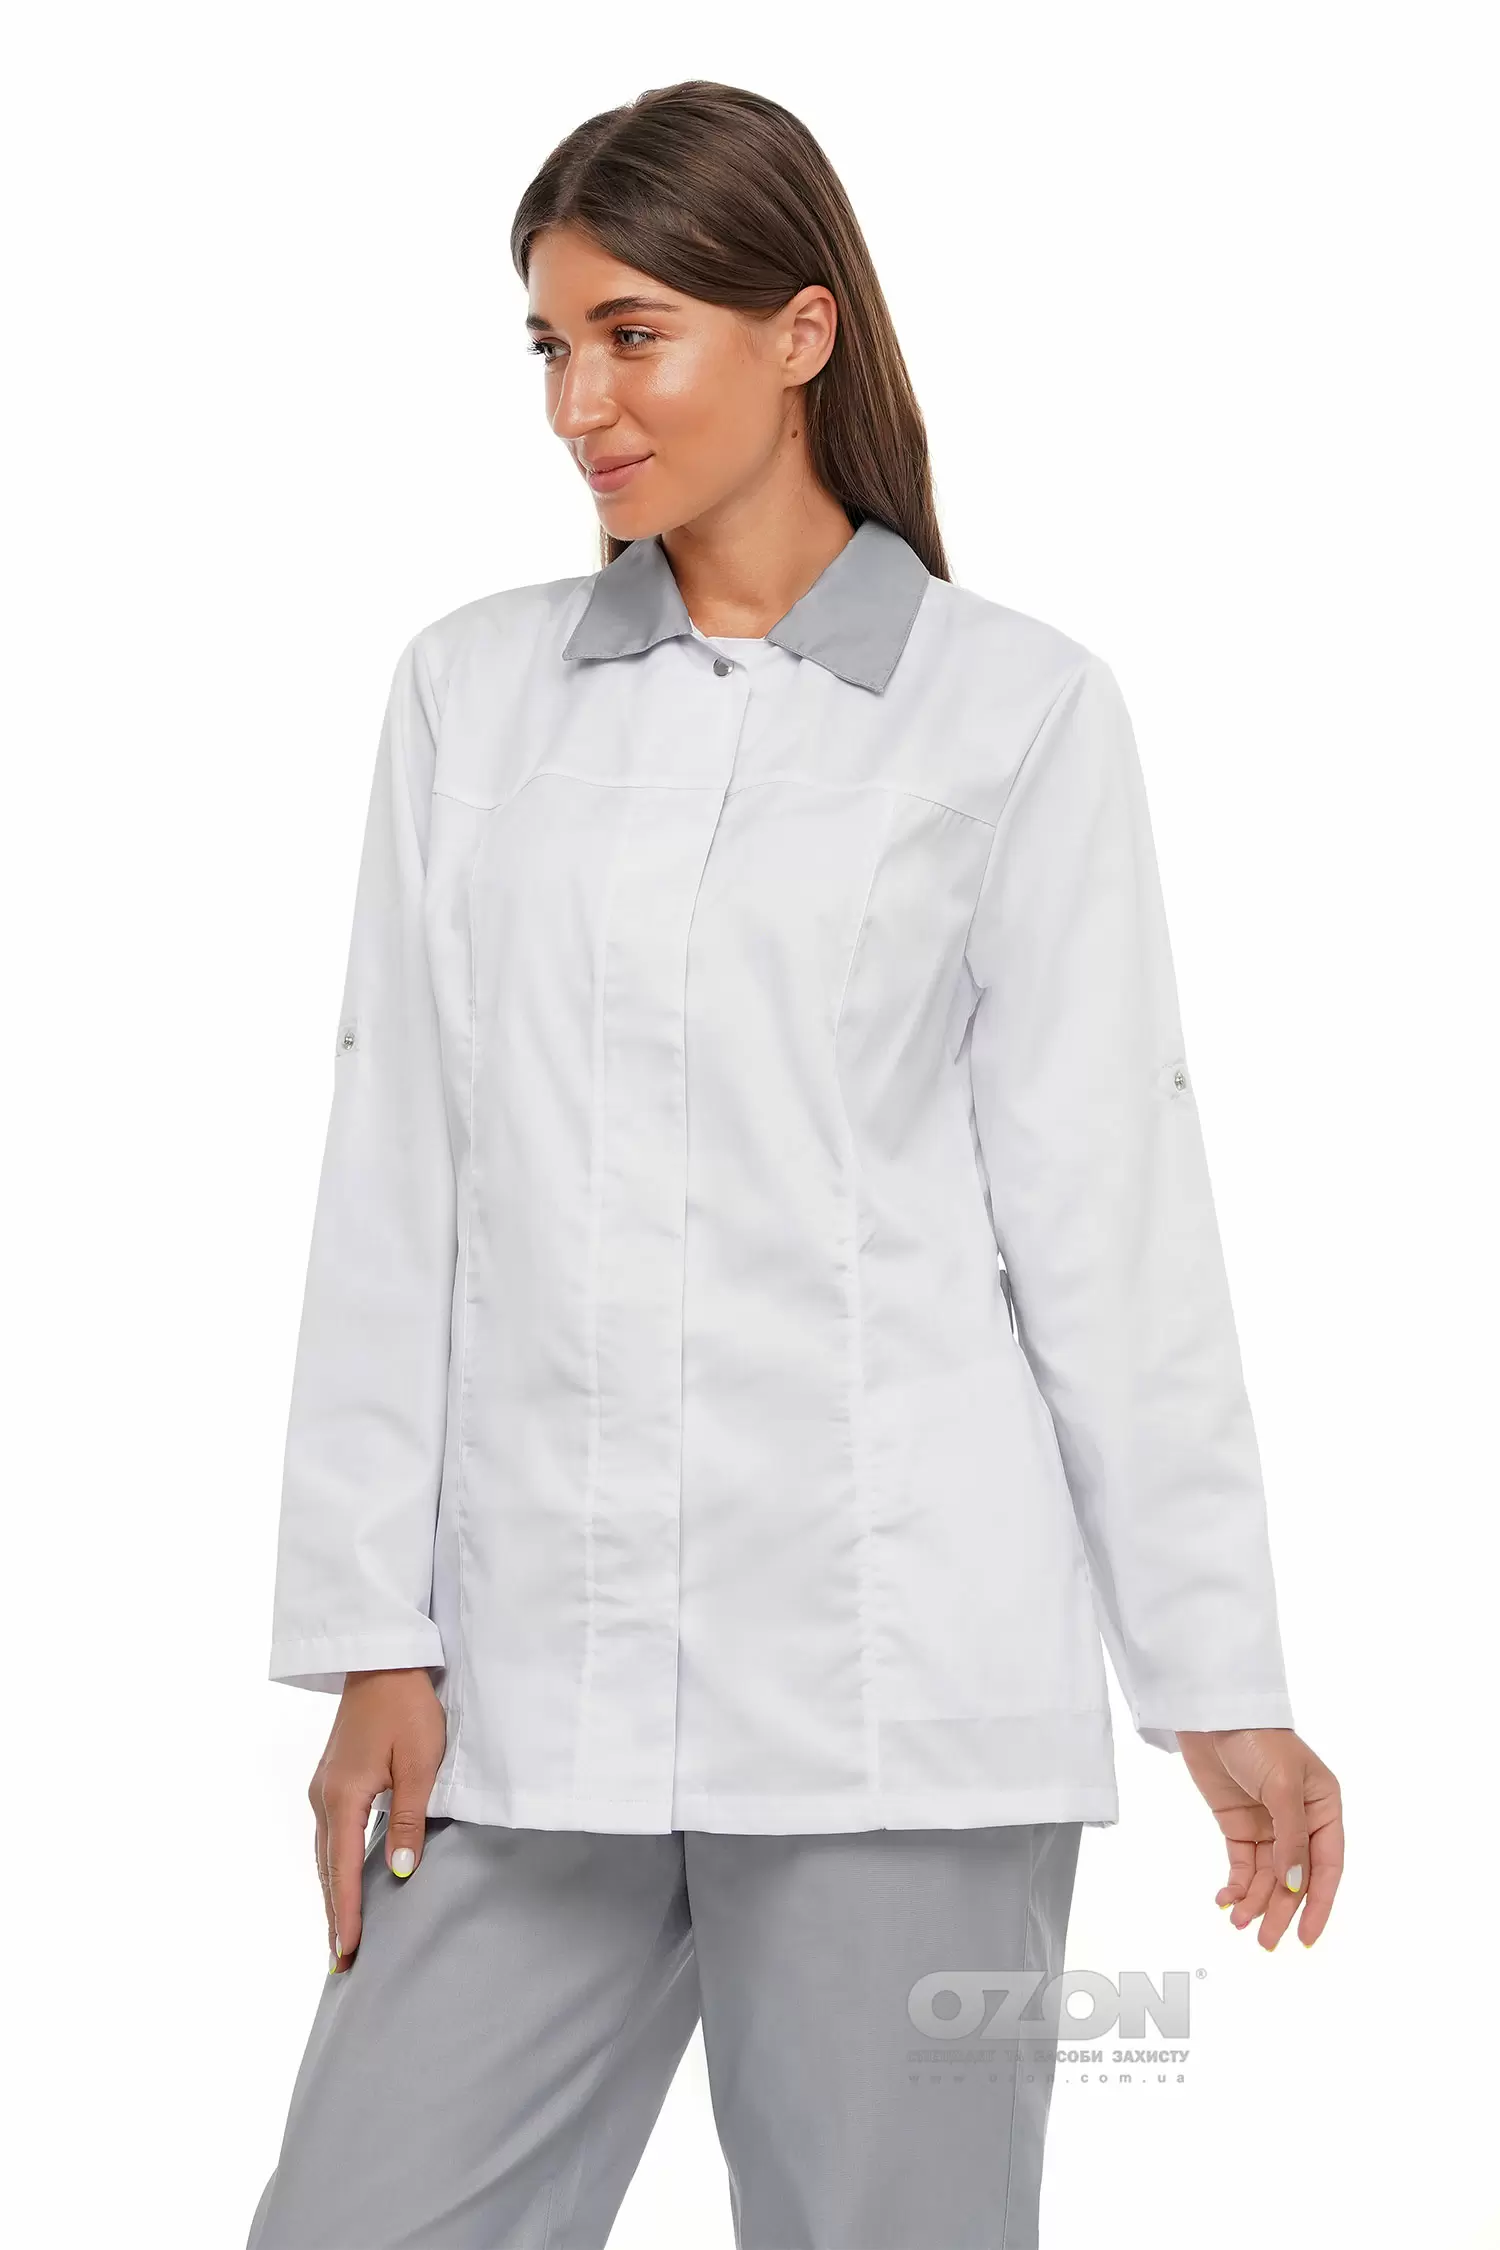 Куртка жіноча Органік К5, білий - Фото 1